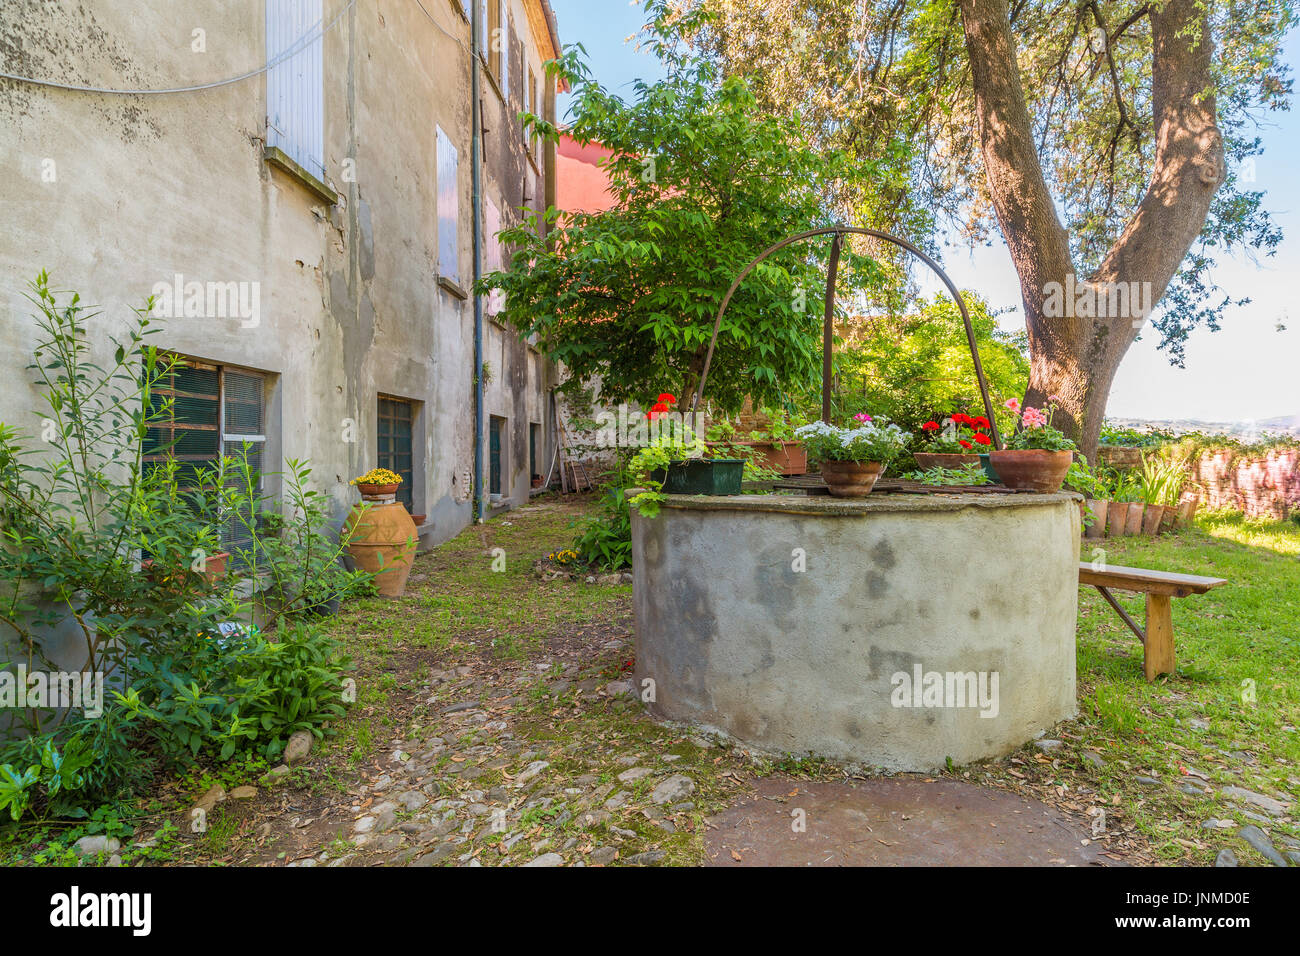 La sérénité de la cour d'une ancienne ferme avec ancien puits et de fleurs, en Romagne, Italie Banque D'Images